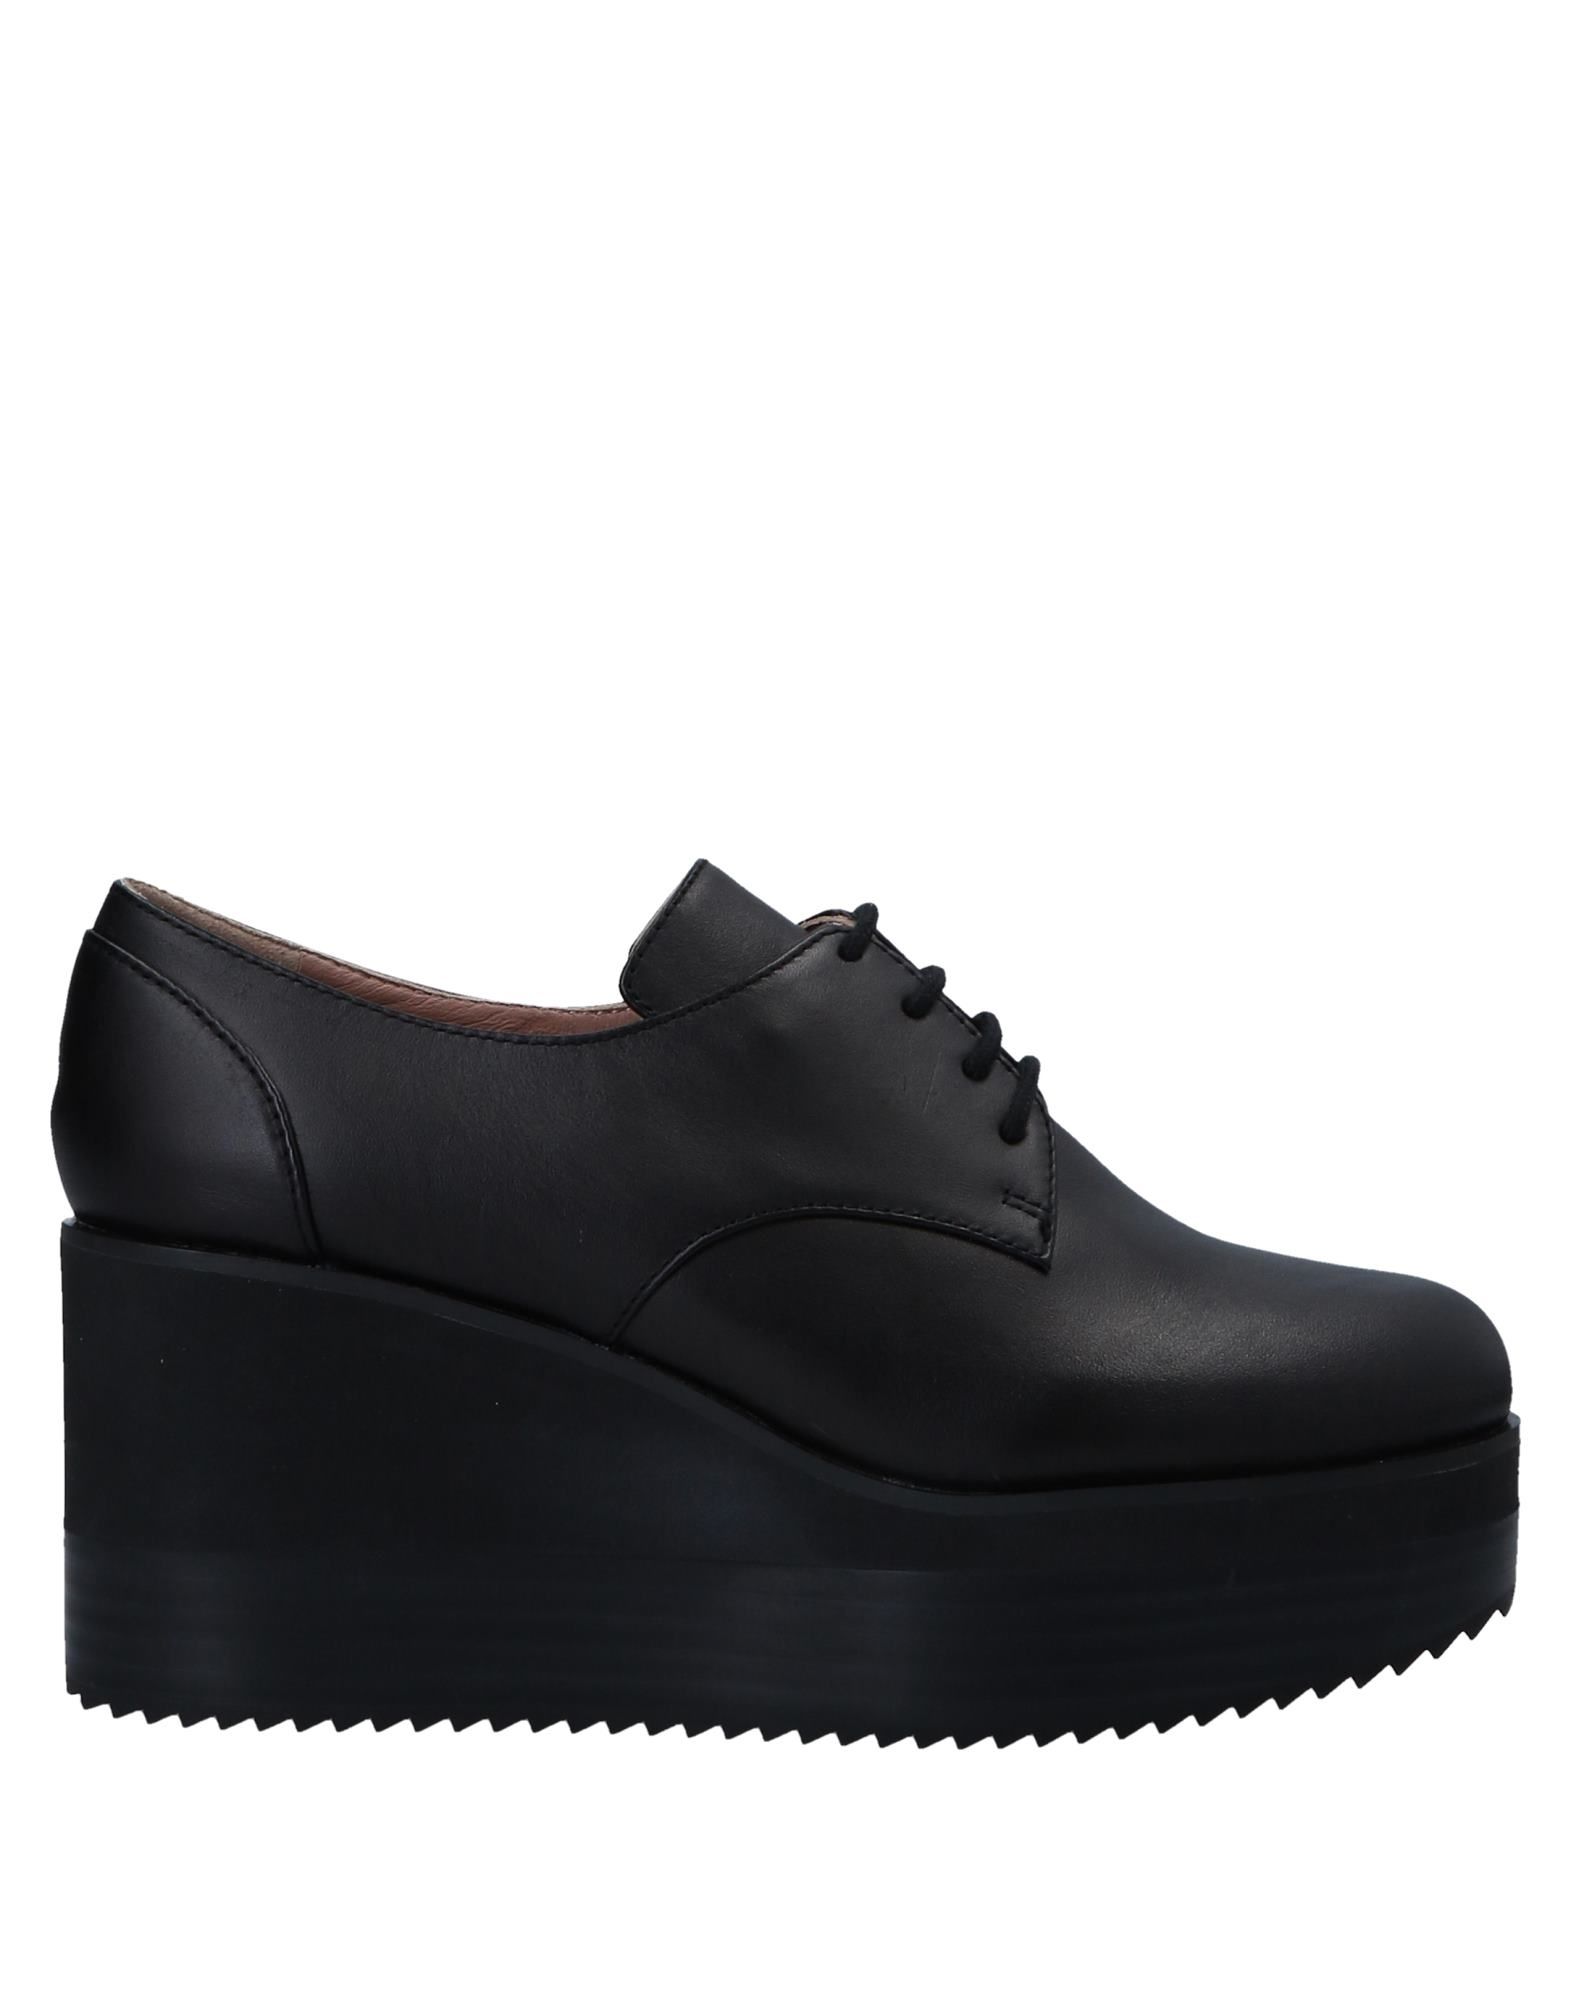 Massey's | BUYMA Jil Sander Navy Laced Shoes - Women Jil Sander Navy L...